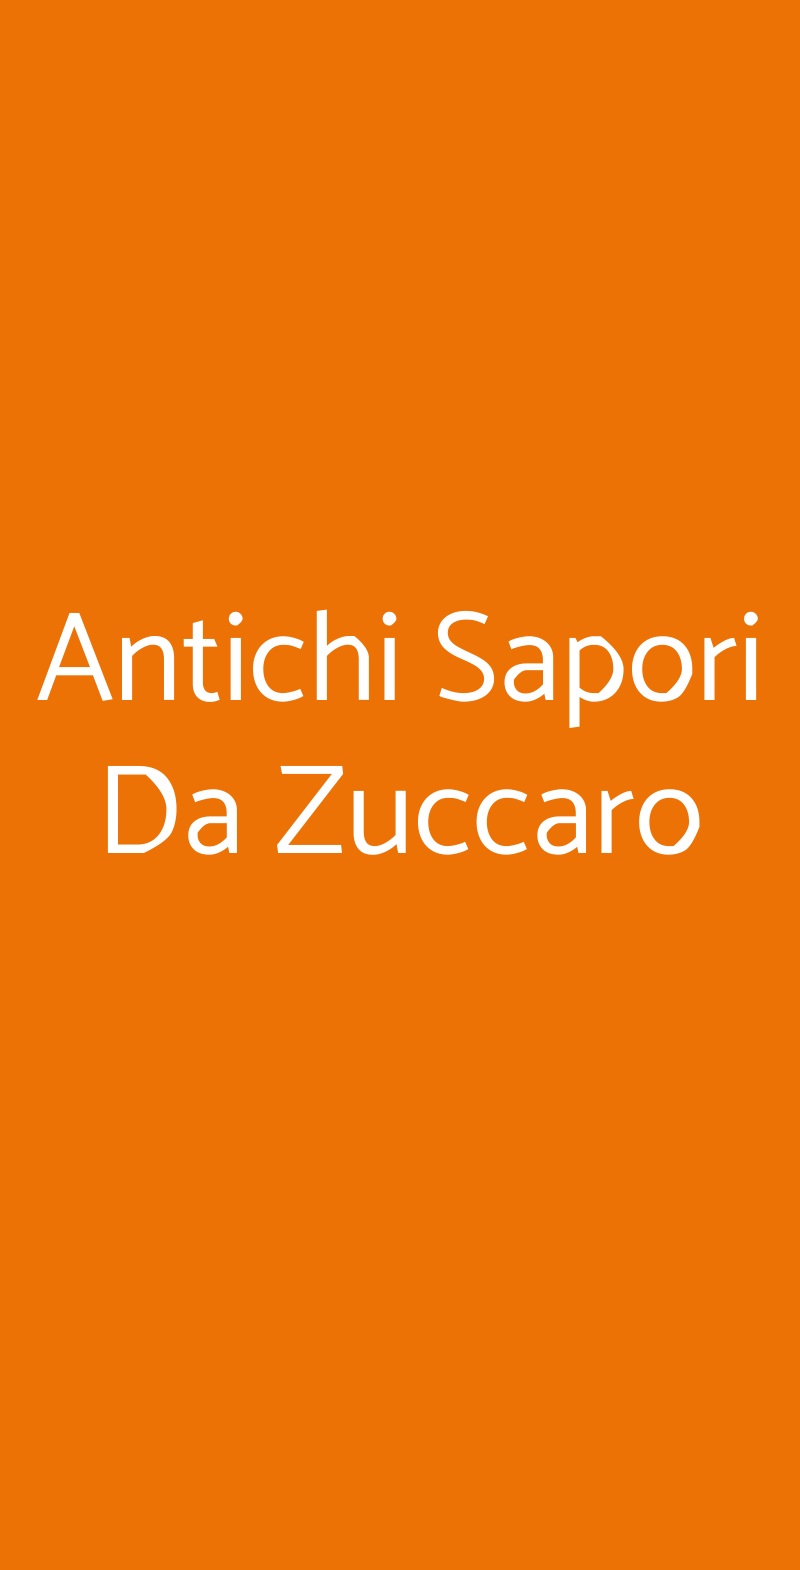 Antichi Sapori Da Zuccaro Catania menù 1 pagina